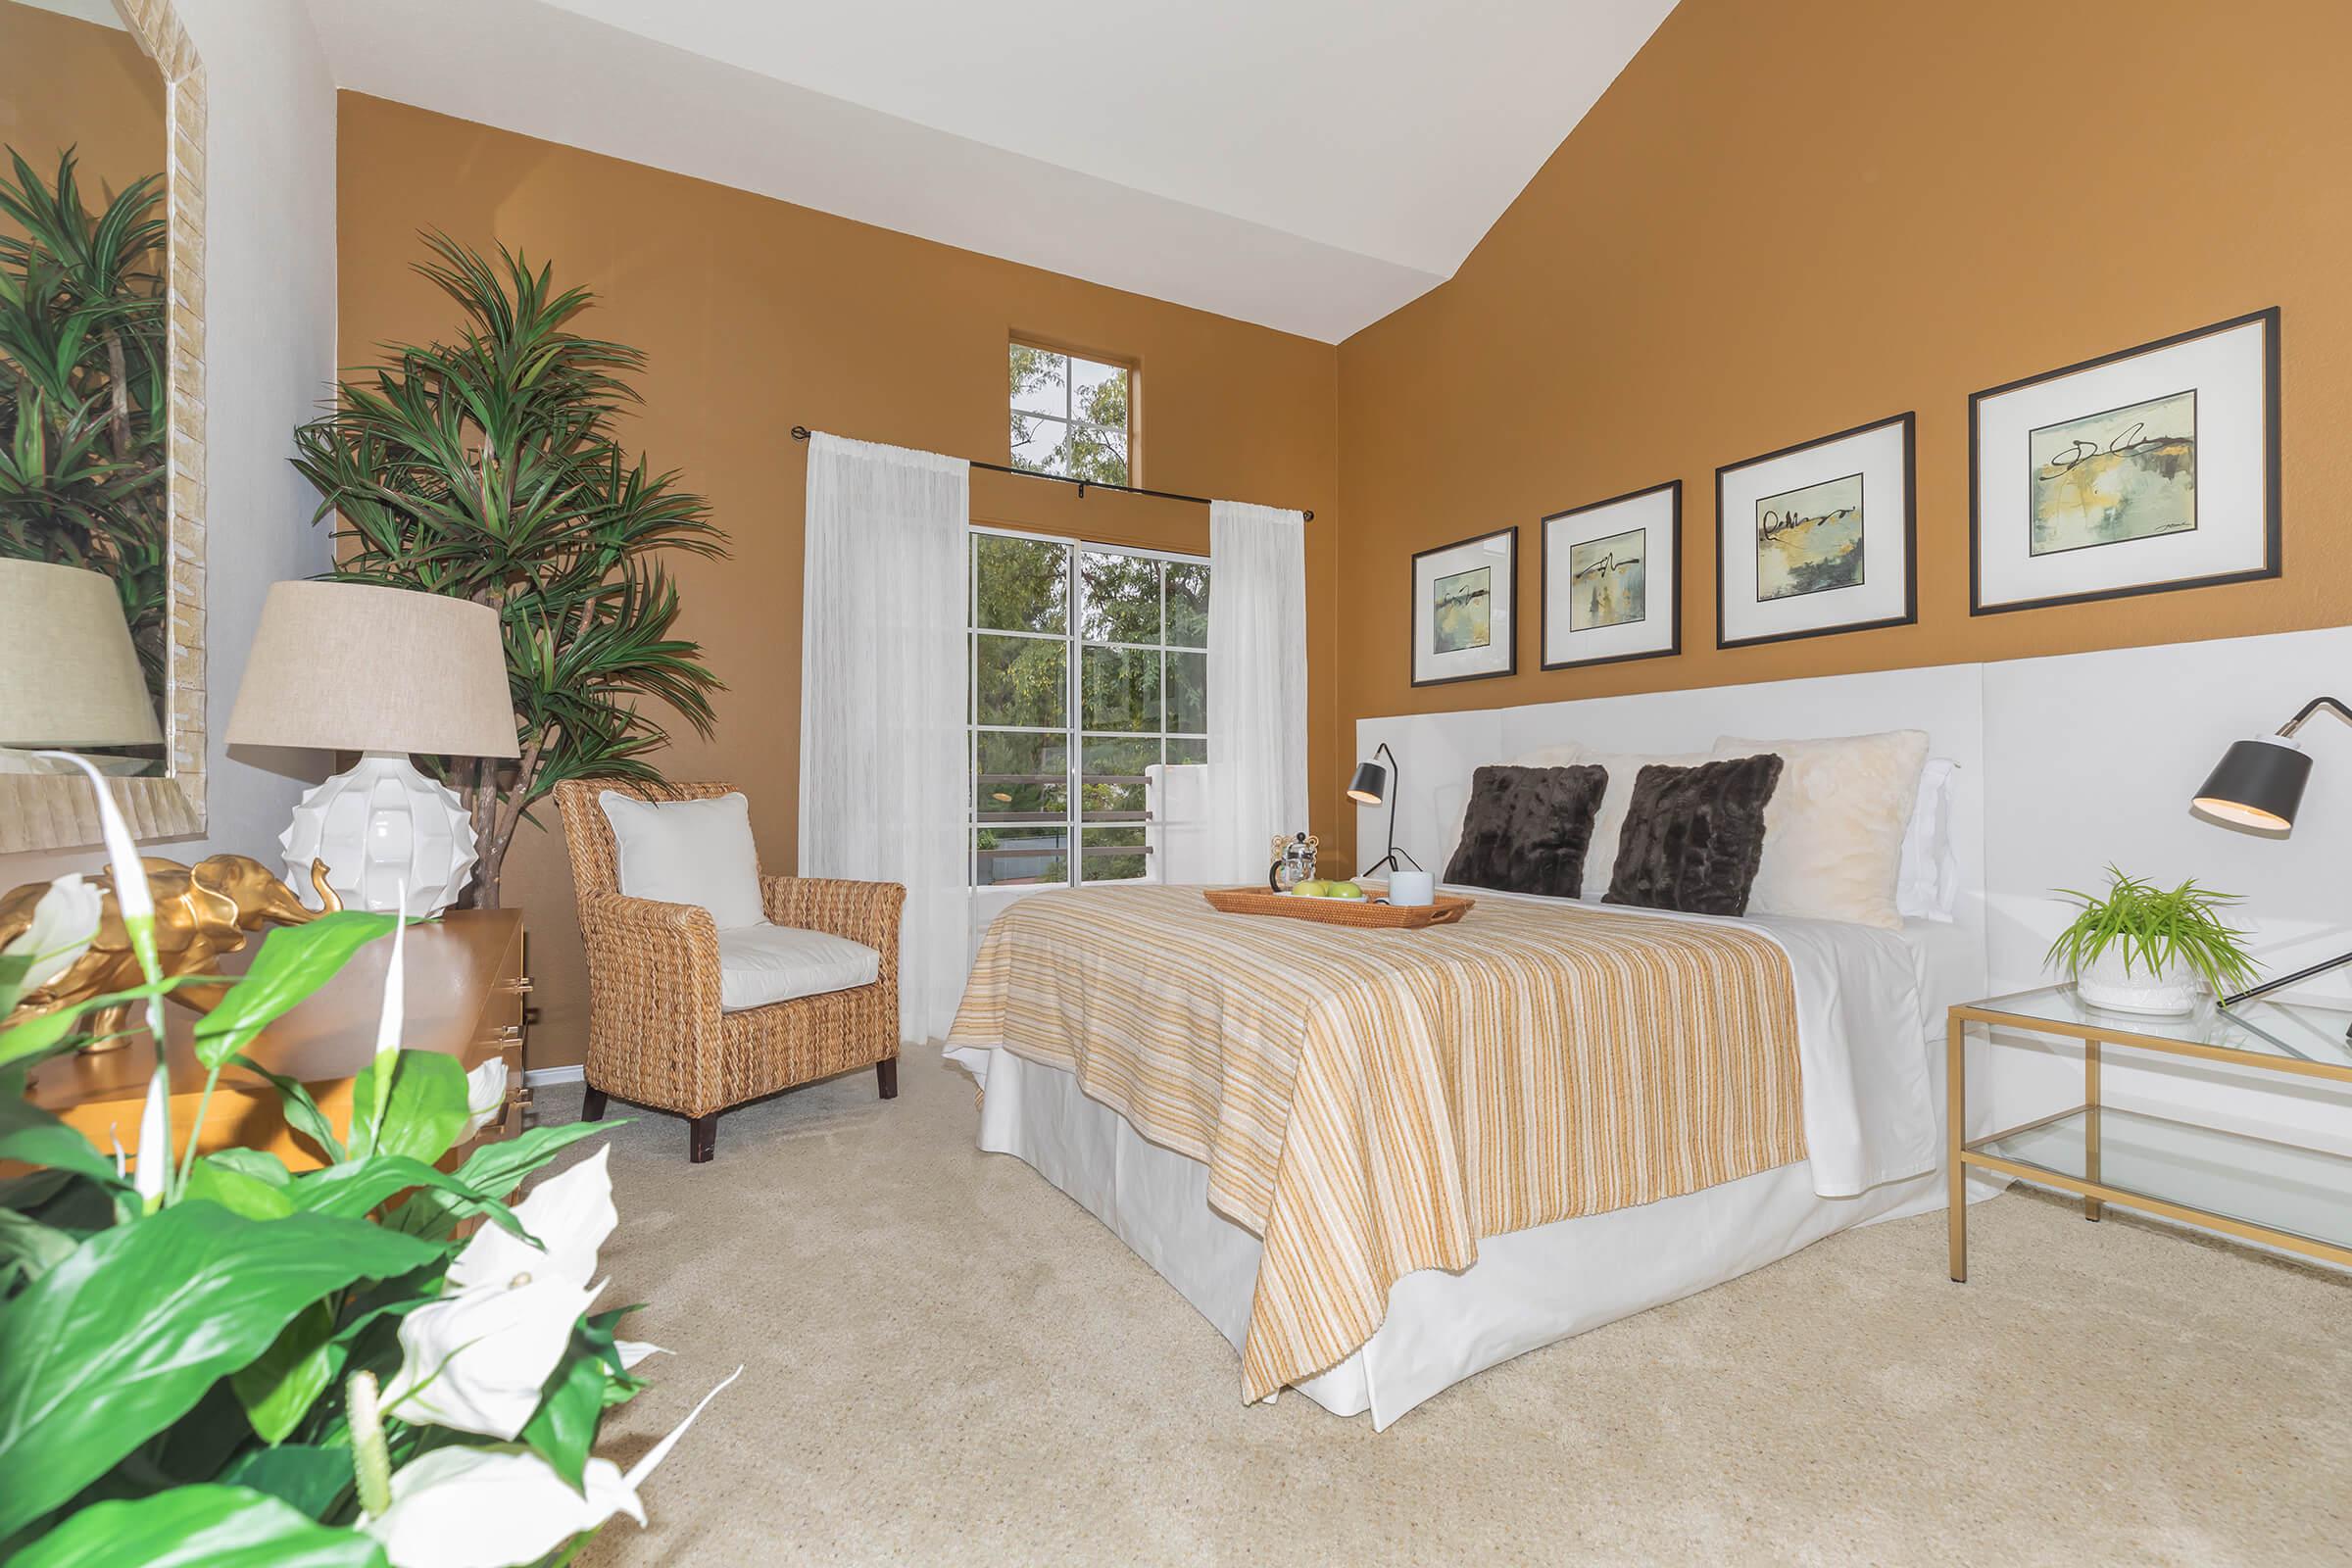 Cozy bedrooms in Woodland Hills, California